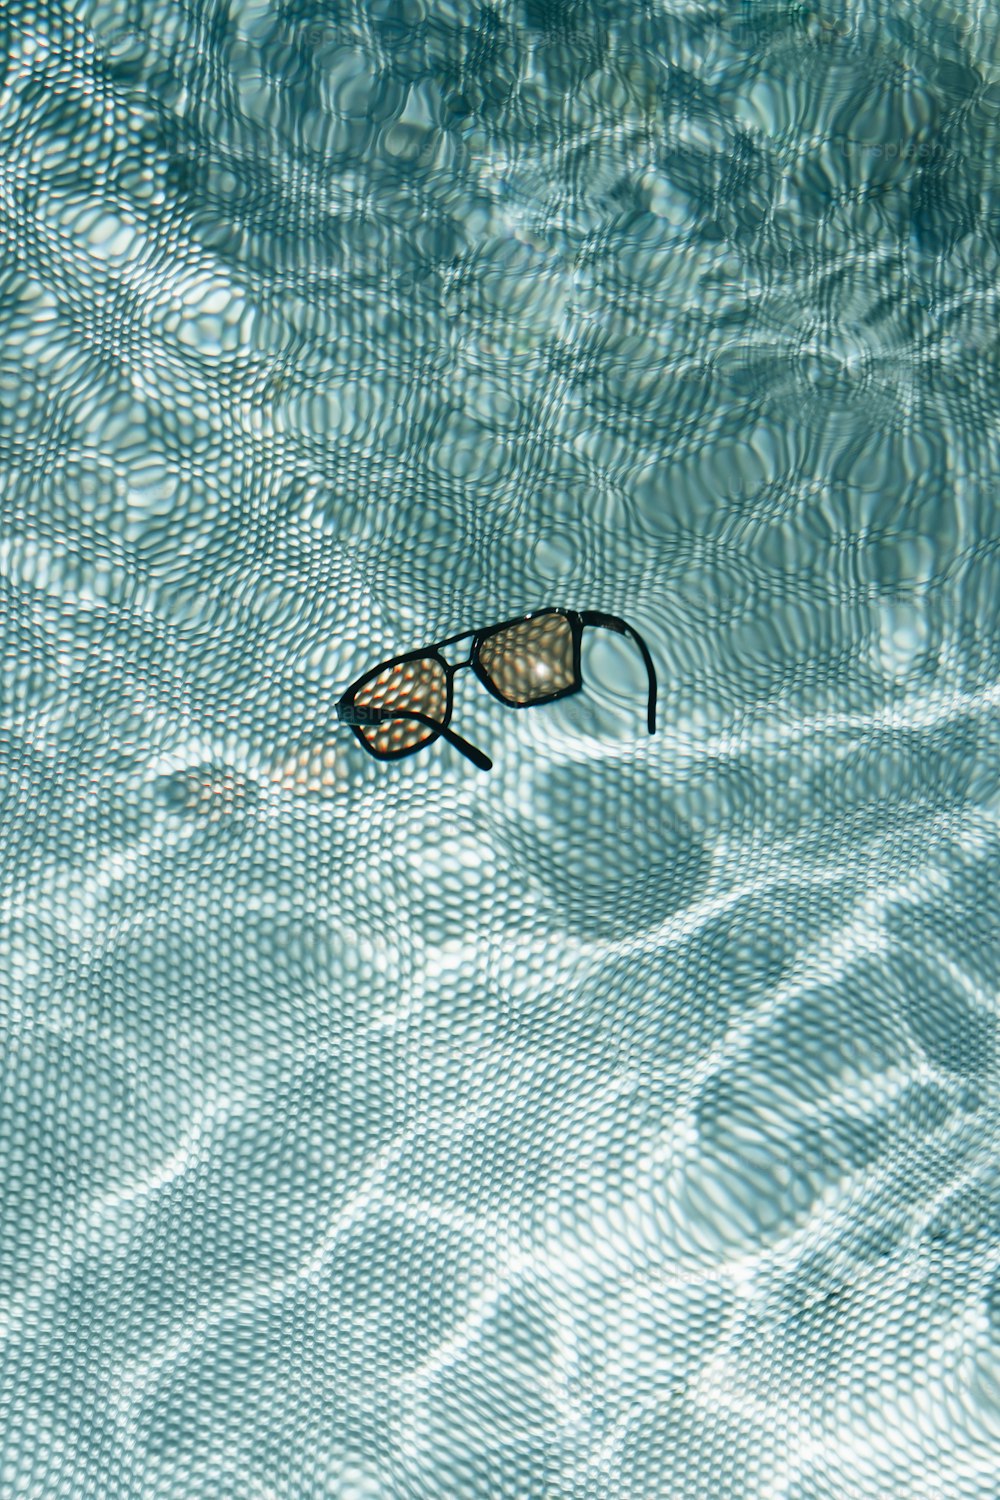 une paire de lunettes de natation flottant dans une piscine